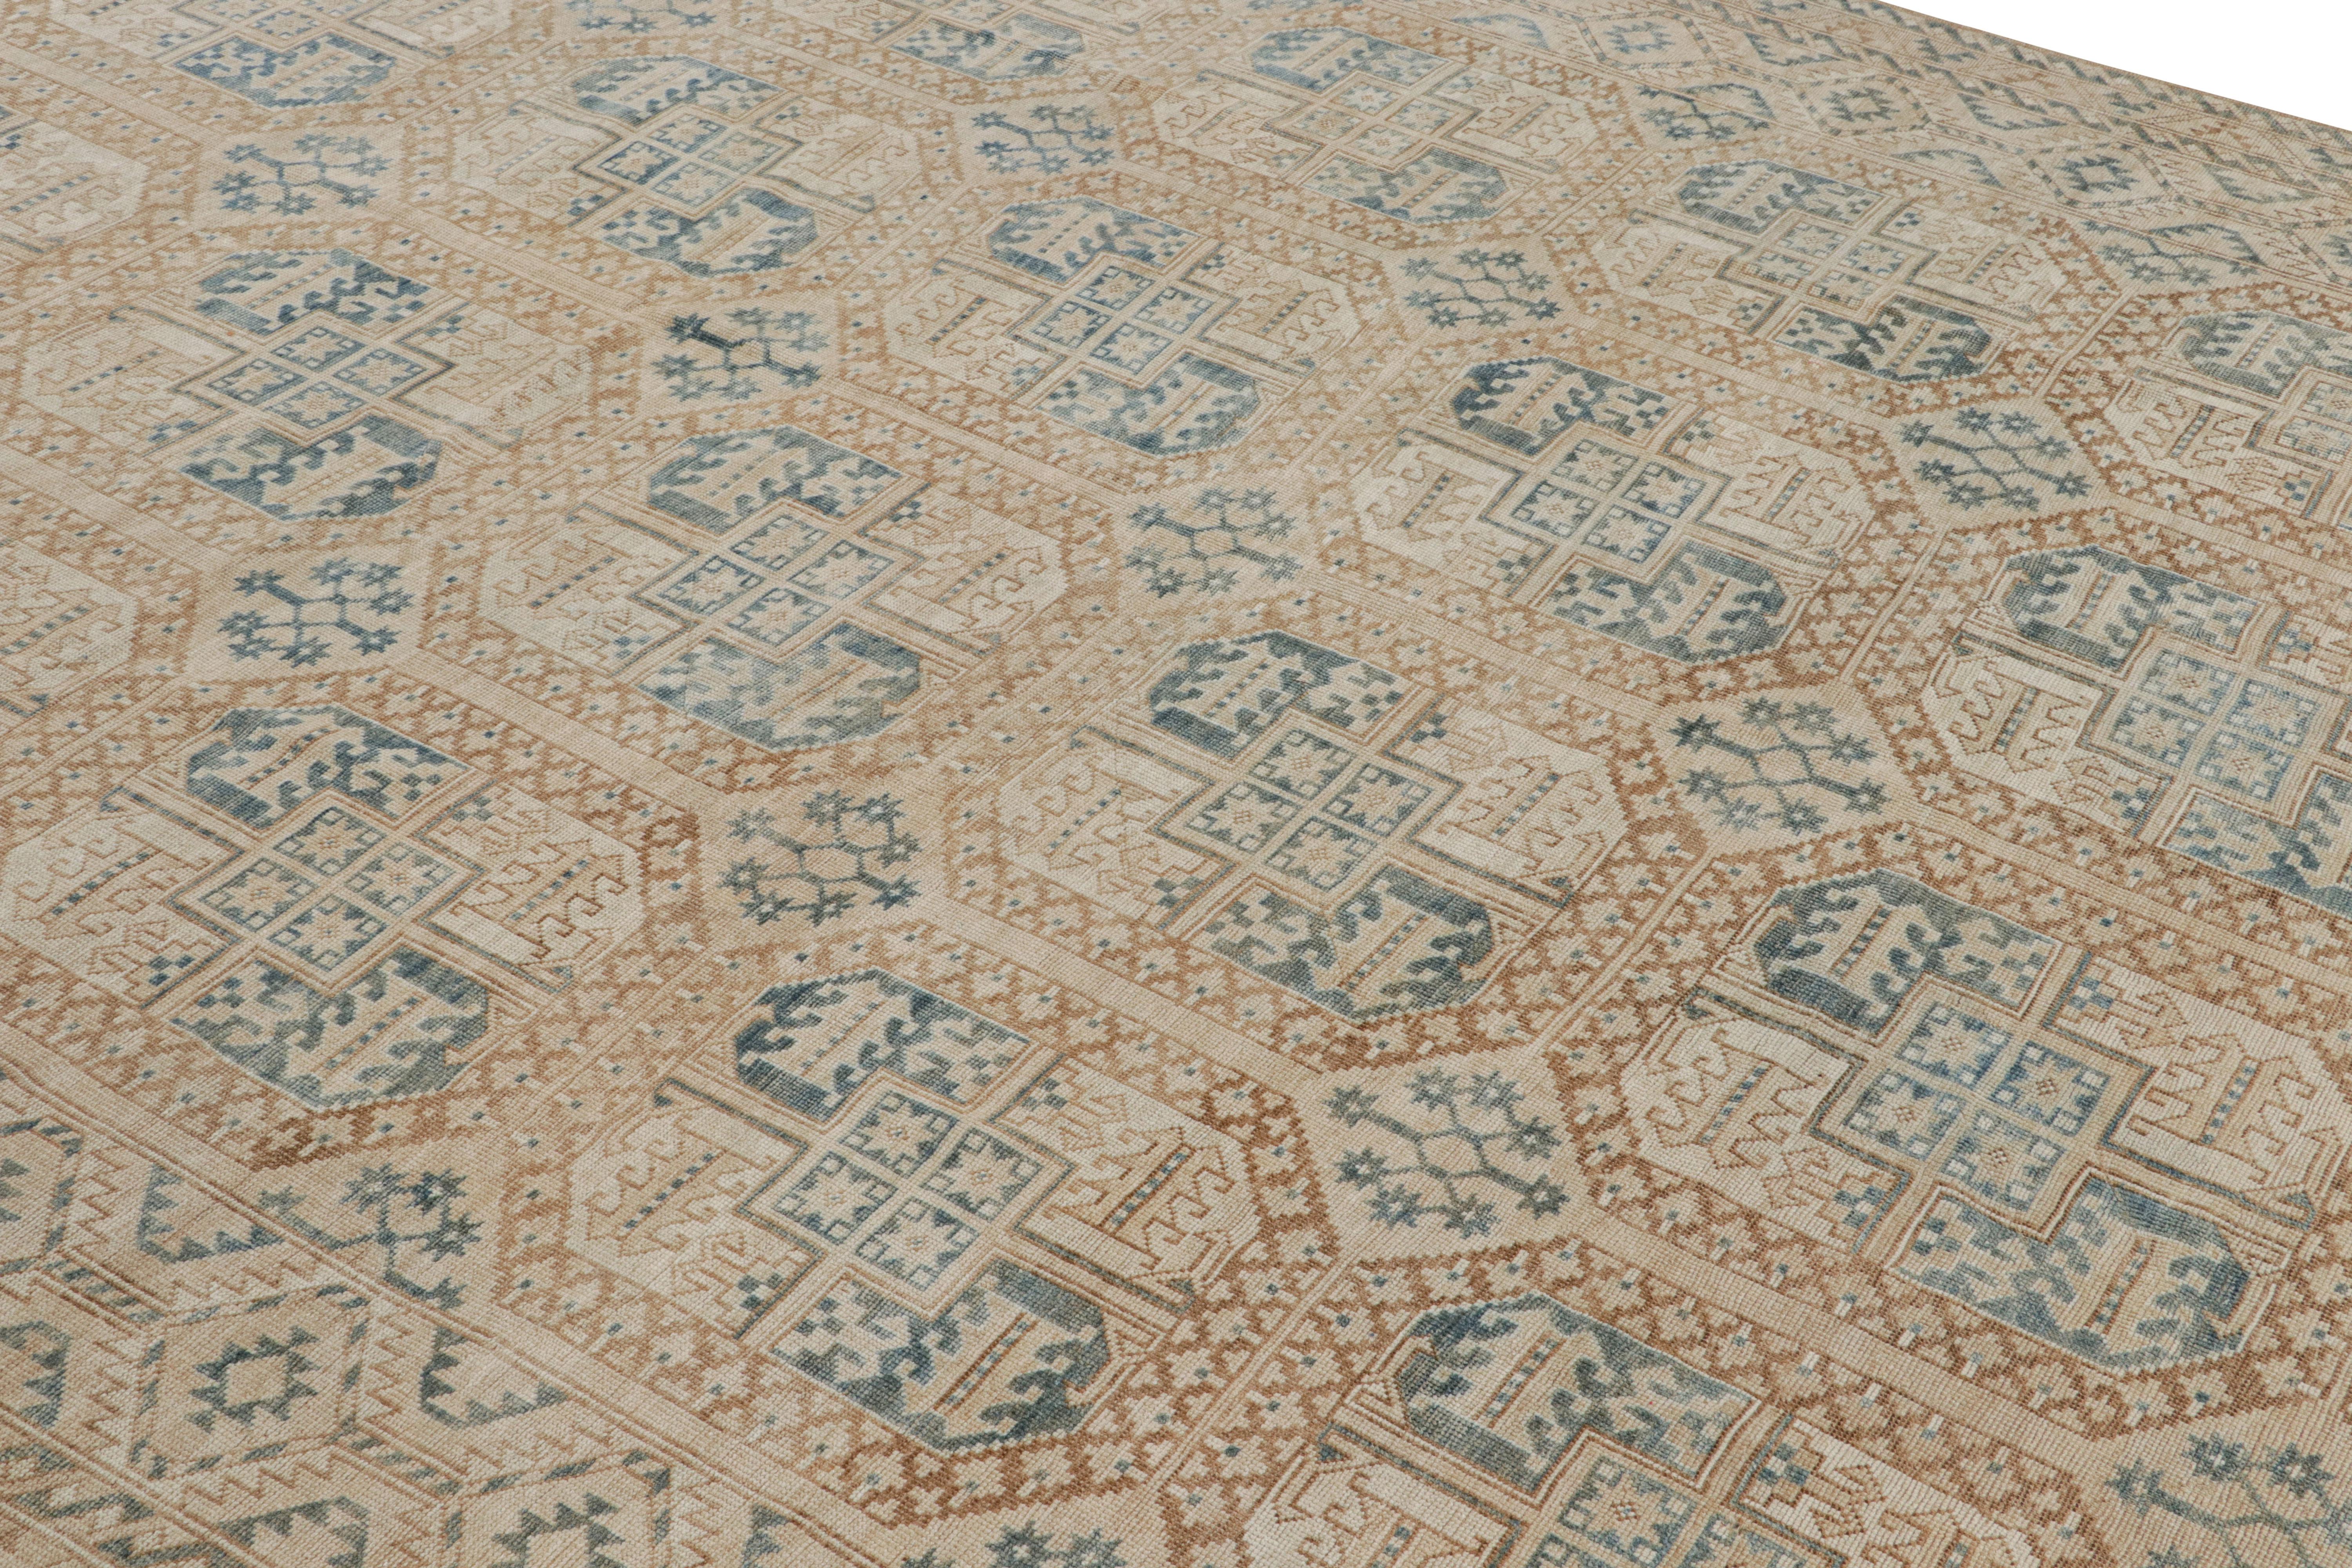 Noué à la main en laine, originaire de Turquie vers 1950-1960, ce tapis Ersari vintage 8x11 provient de la même provenance, une sous-tribu du peuple turkmène, souvent connue pour ses motifs de tapis tribaux plus distincts. 

Sur le Design : 

Les